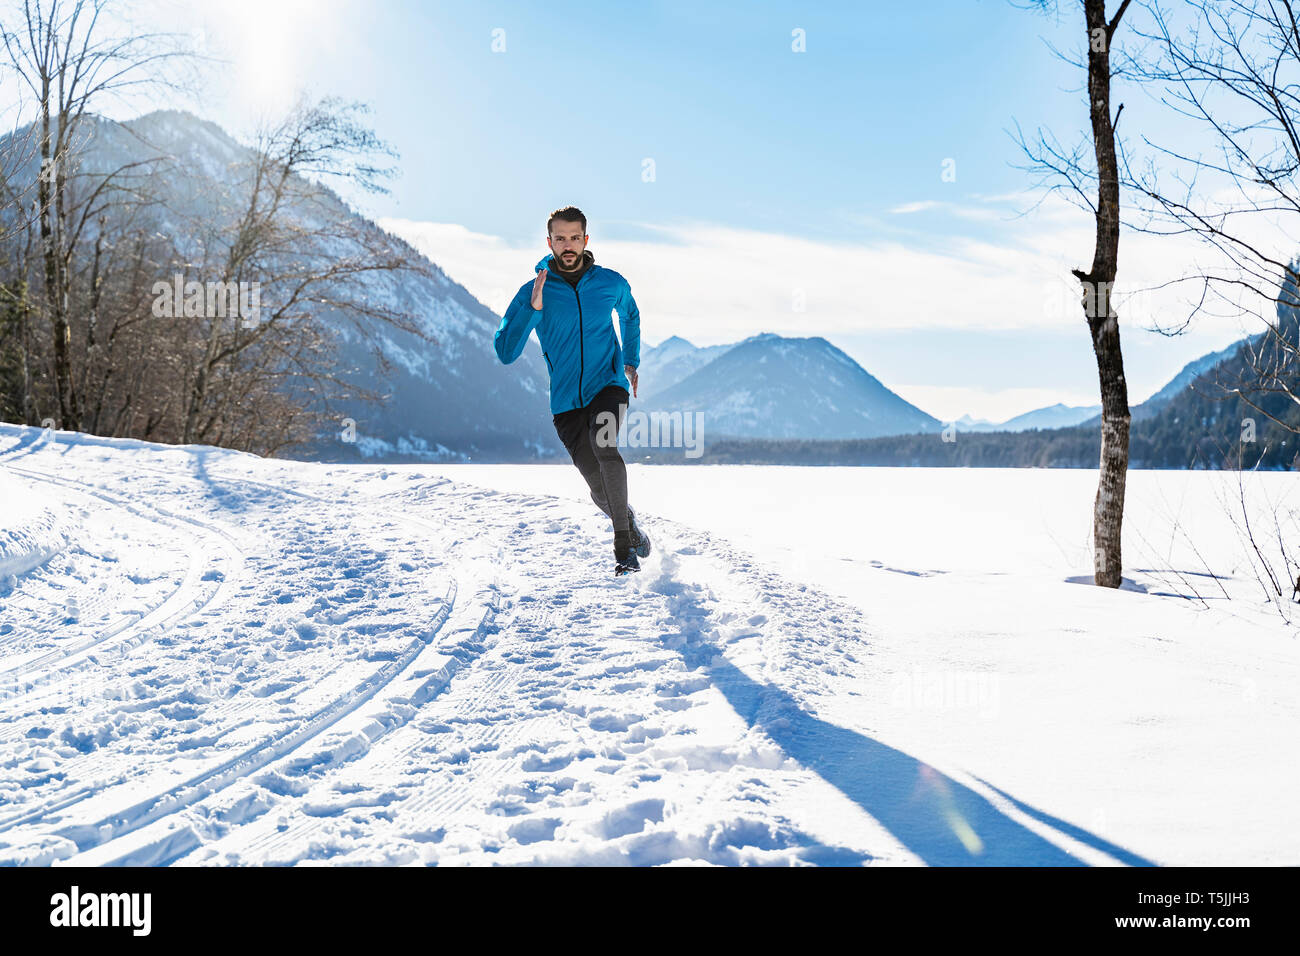 Germany, Bavaria, sportif homme qui court dans la neige en hiver Banque D'Images